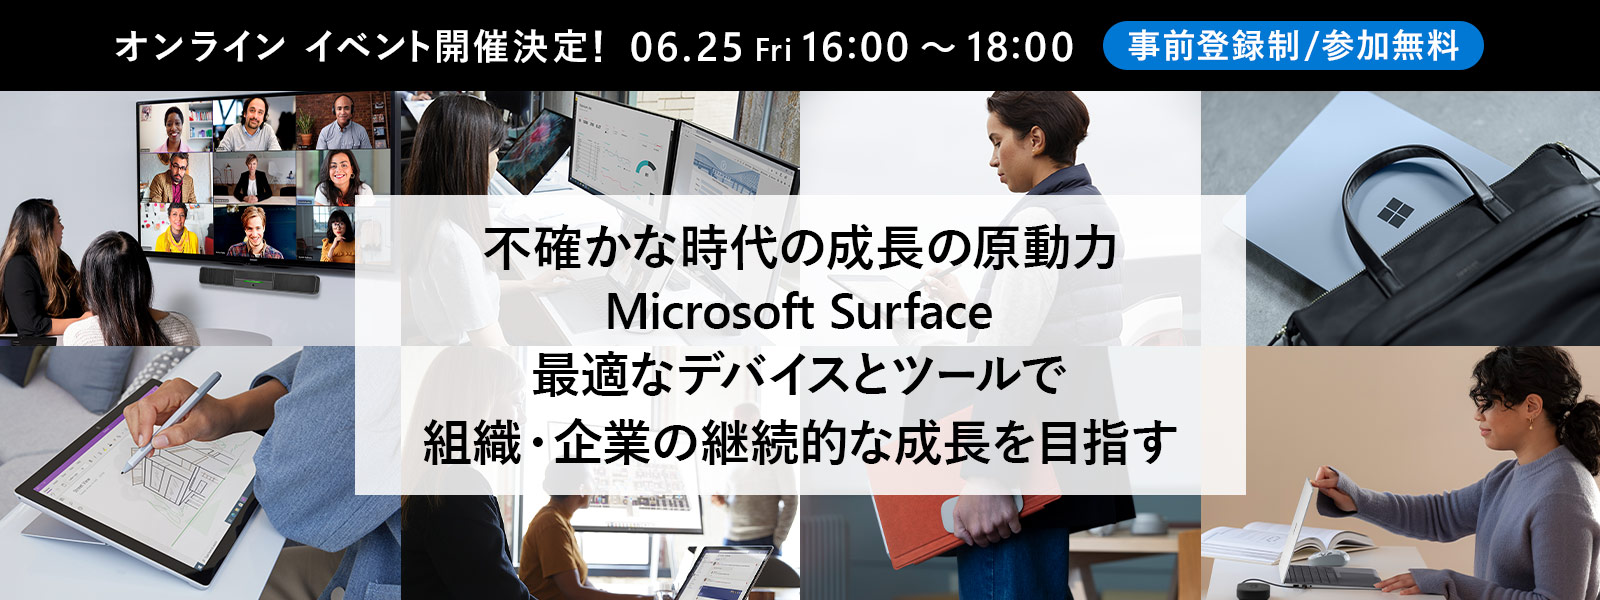 不確かな時代の成長の原動力 Microsoft Surface ～ 最適なデバイスとツールで組織・企業の継続的な成長を目指す